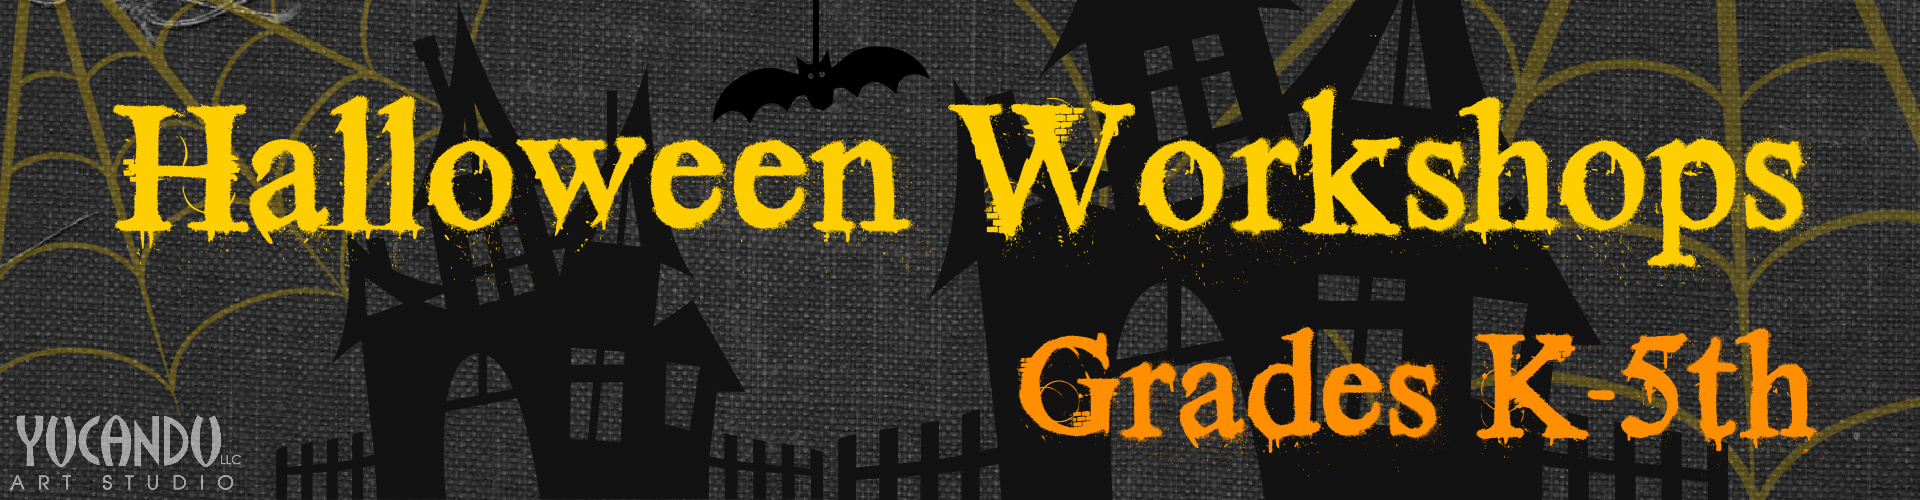 Halloween Workshops For Grades K-5th